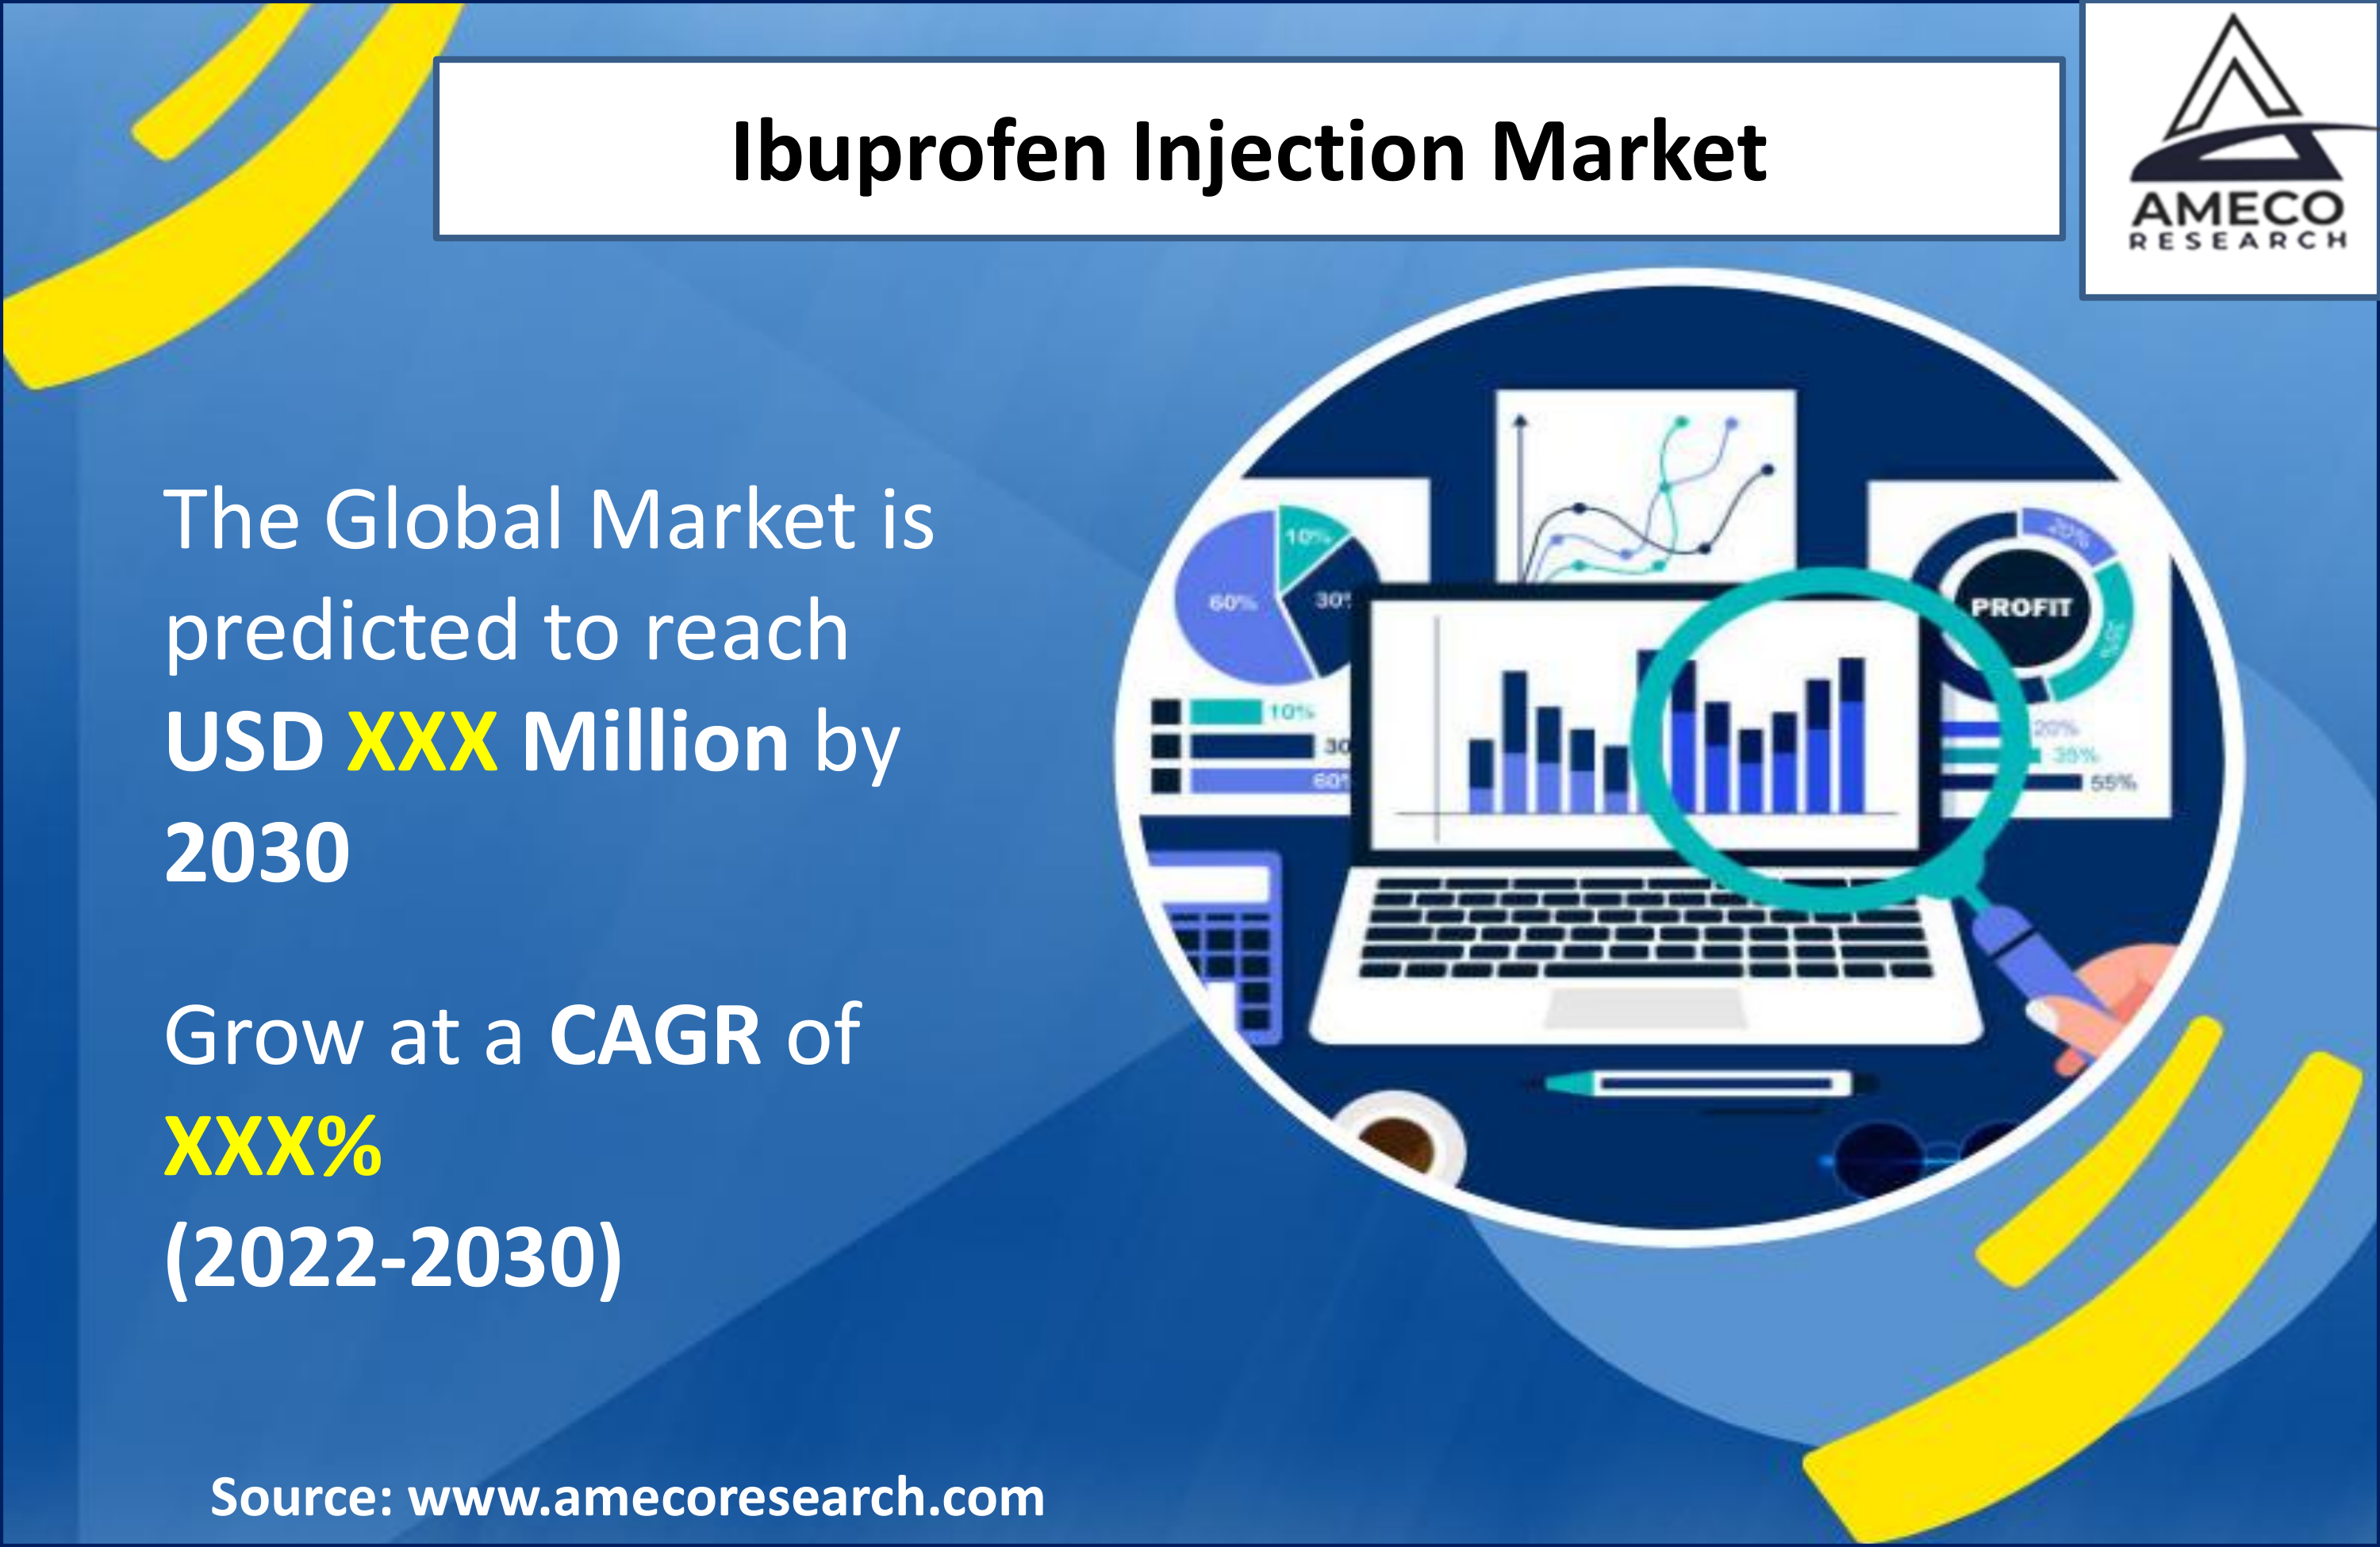 Ibuprofen Injection Market